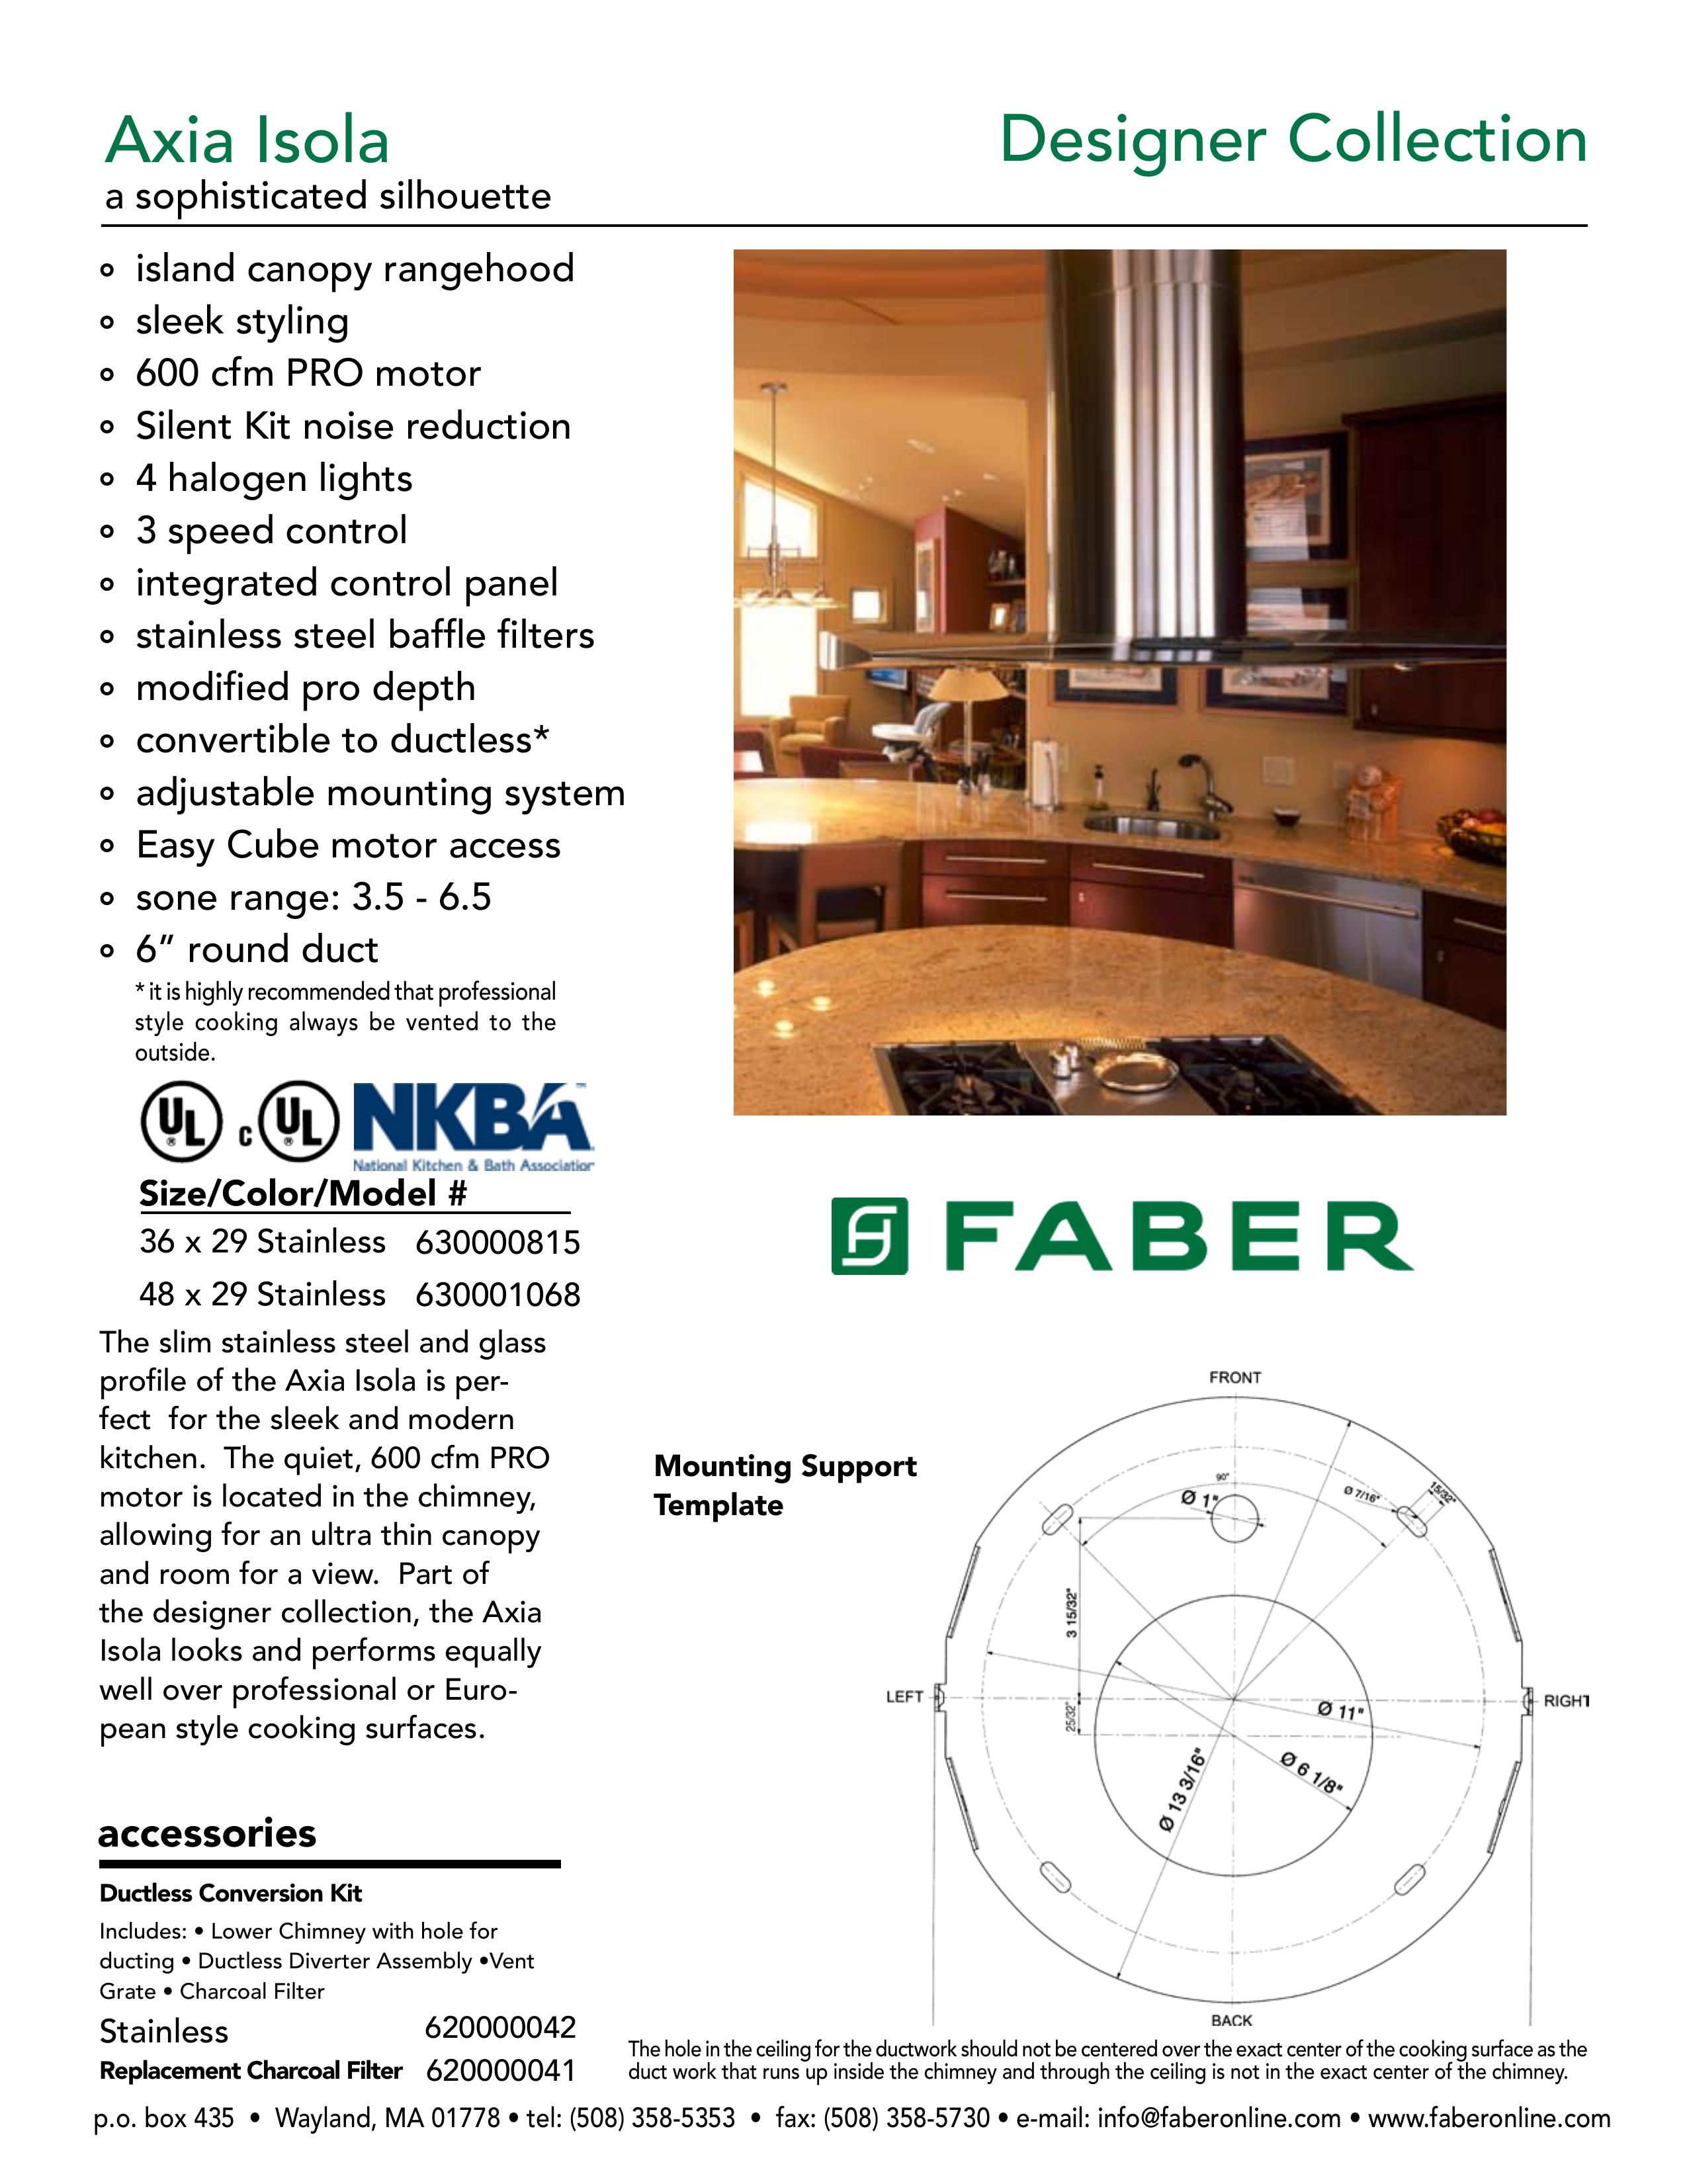 Faber 630001068 Ventilation Hood User Manual